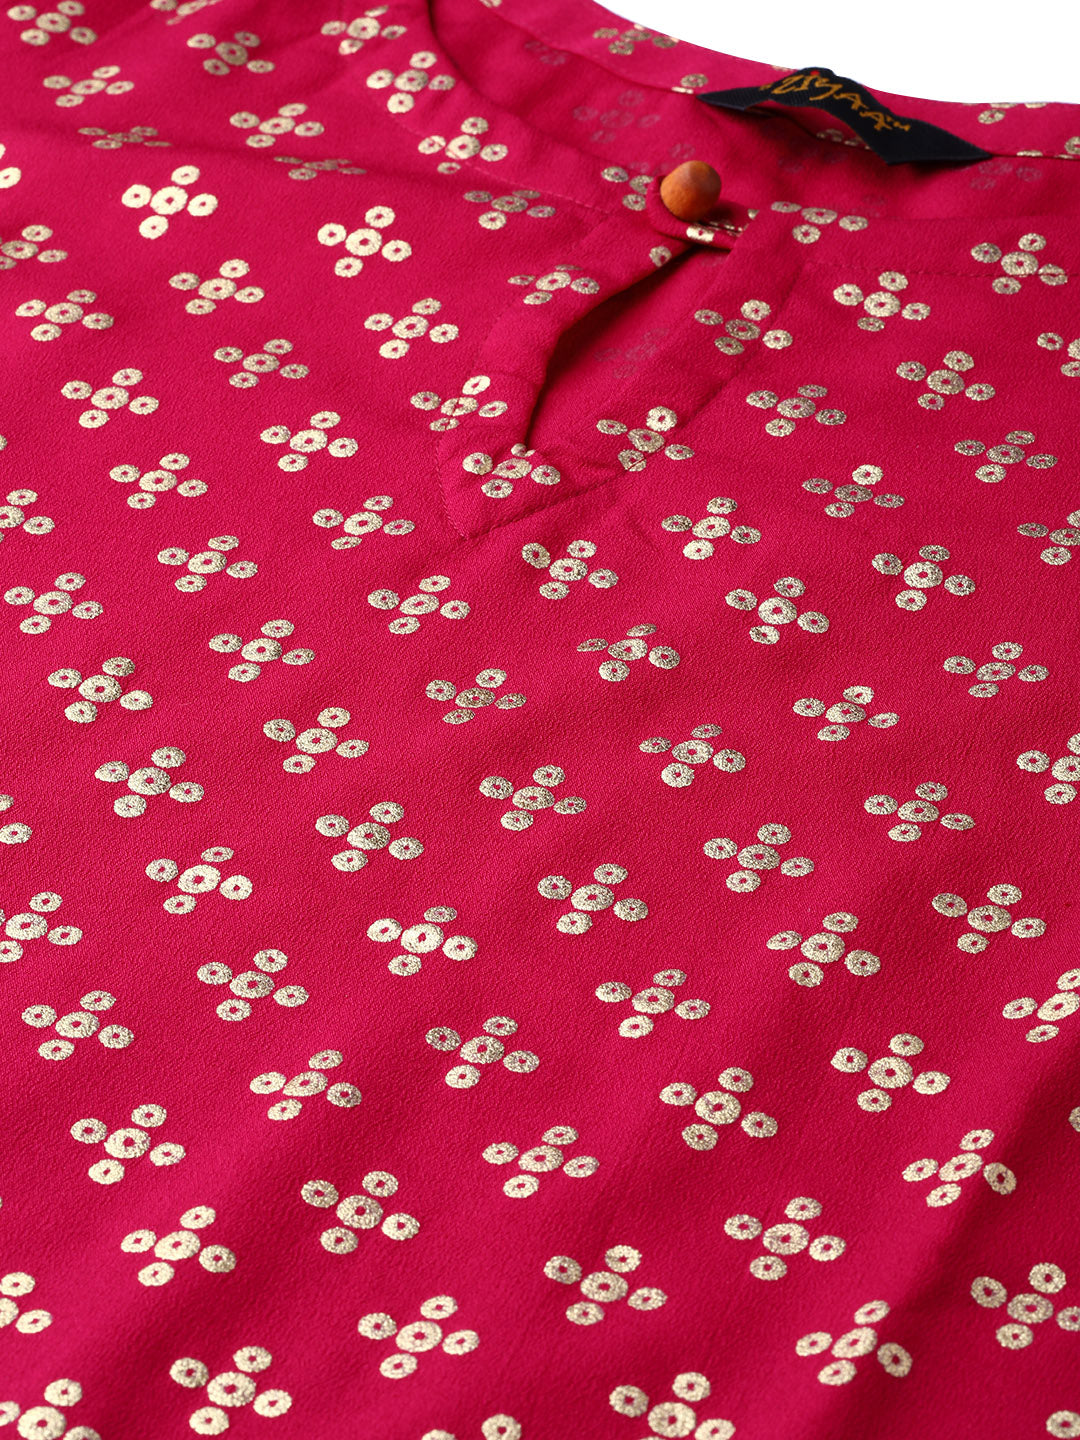 Women’s pink crepe printed kurta and pallazo set by Ziyaa.- (2pcs set)